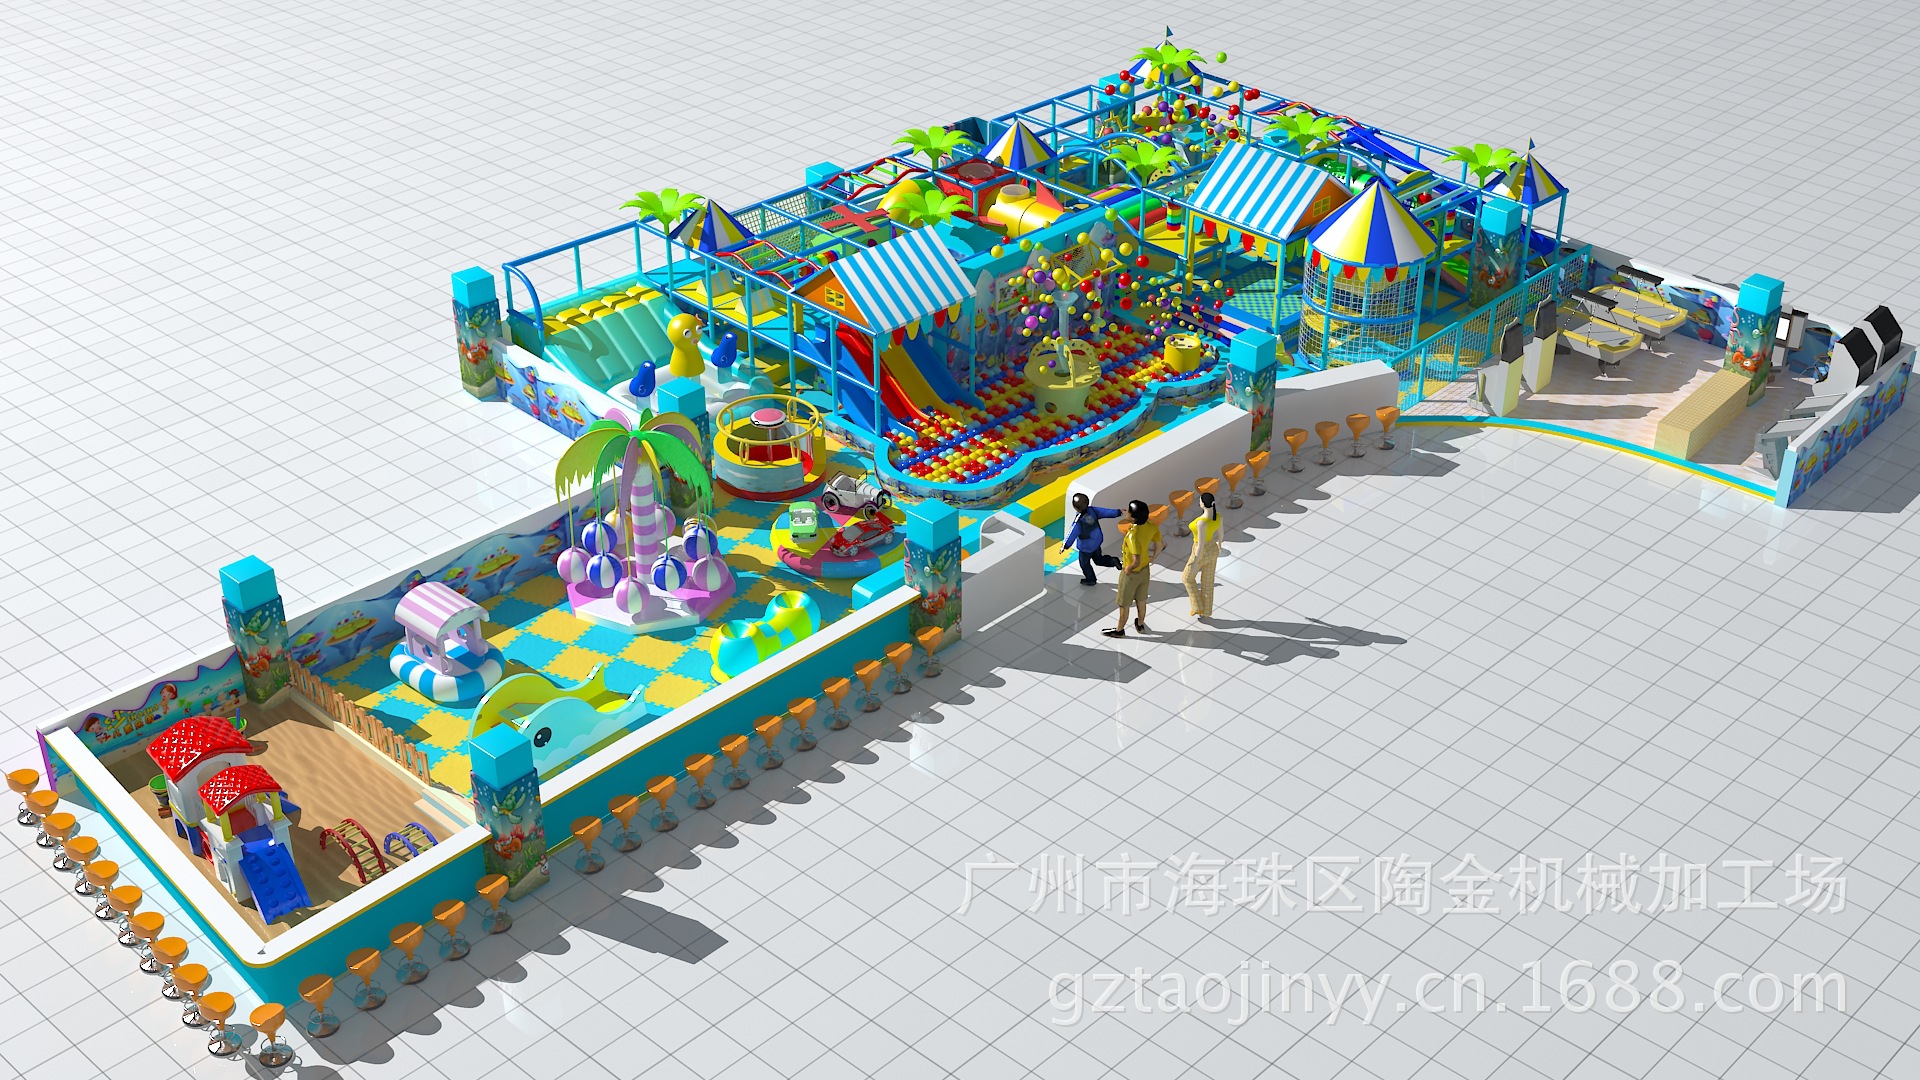 【广州室内儿童游乐场配件 价格 设计 方案 免费